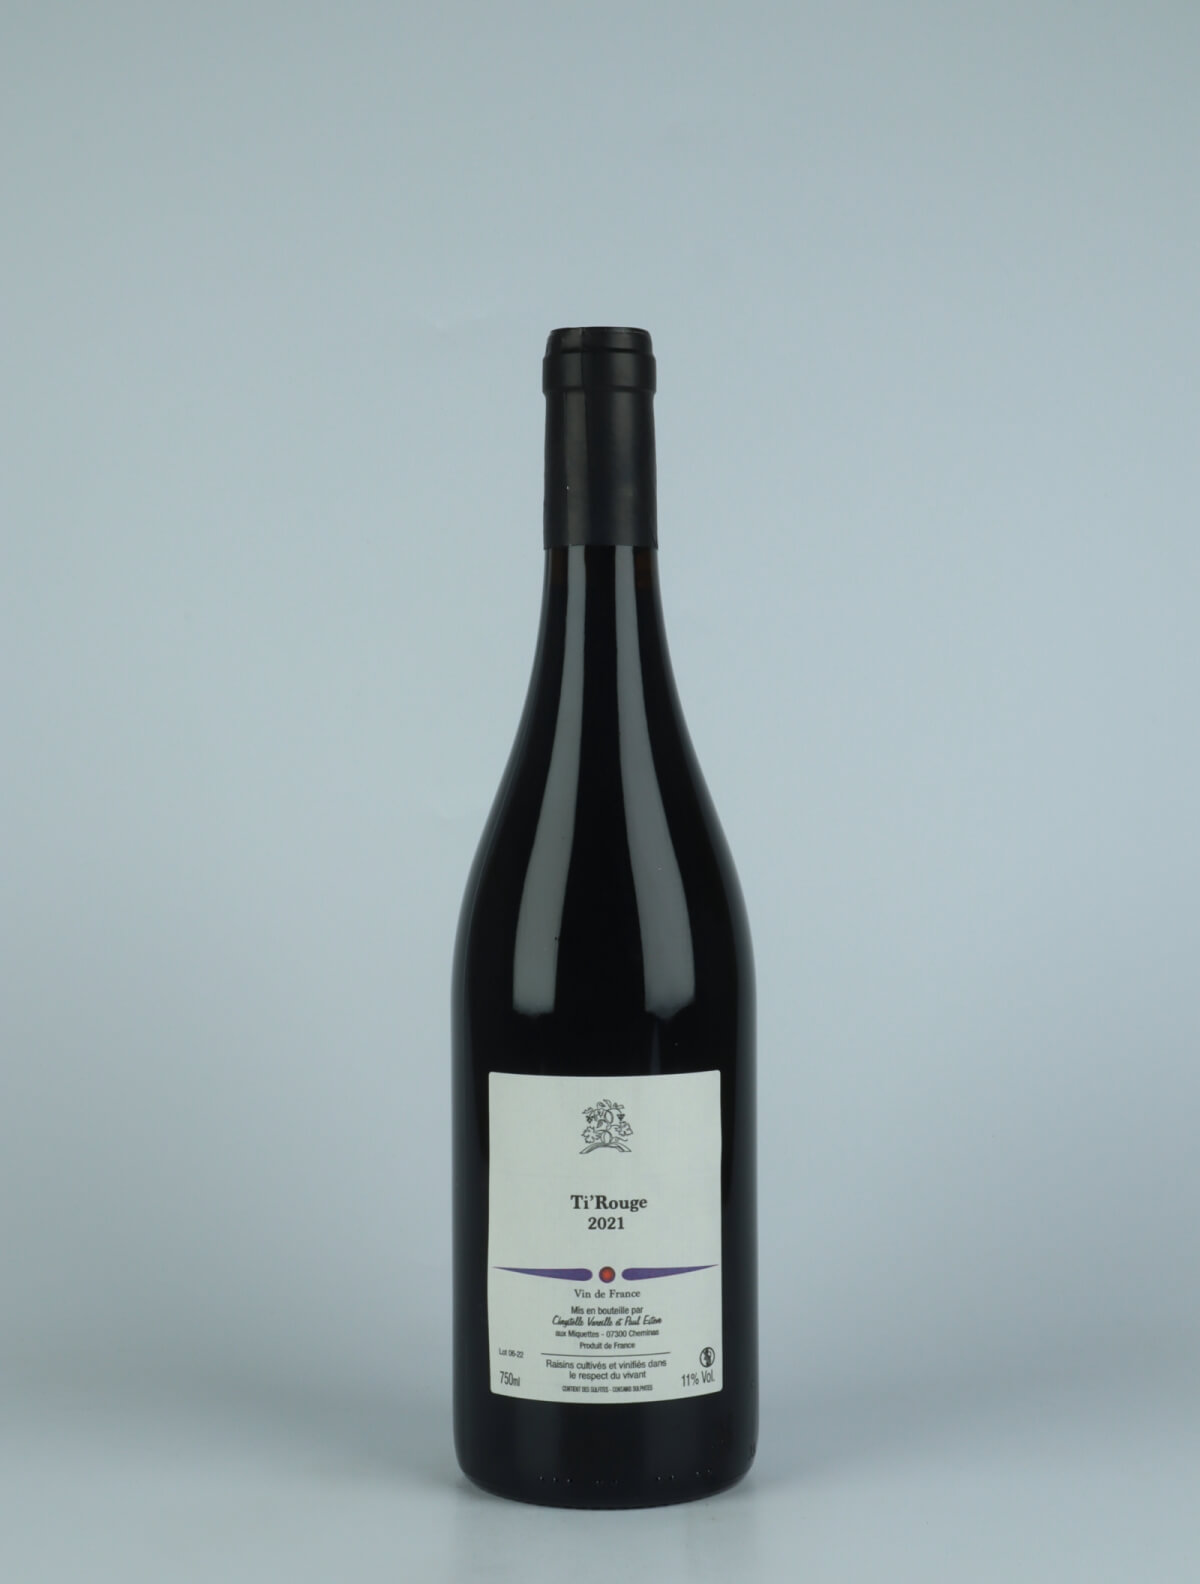 En flaske 2021 Ti'Rouge Rødvin fra Domaine des Miquettes, Rhône i Frankrig